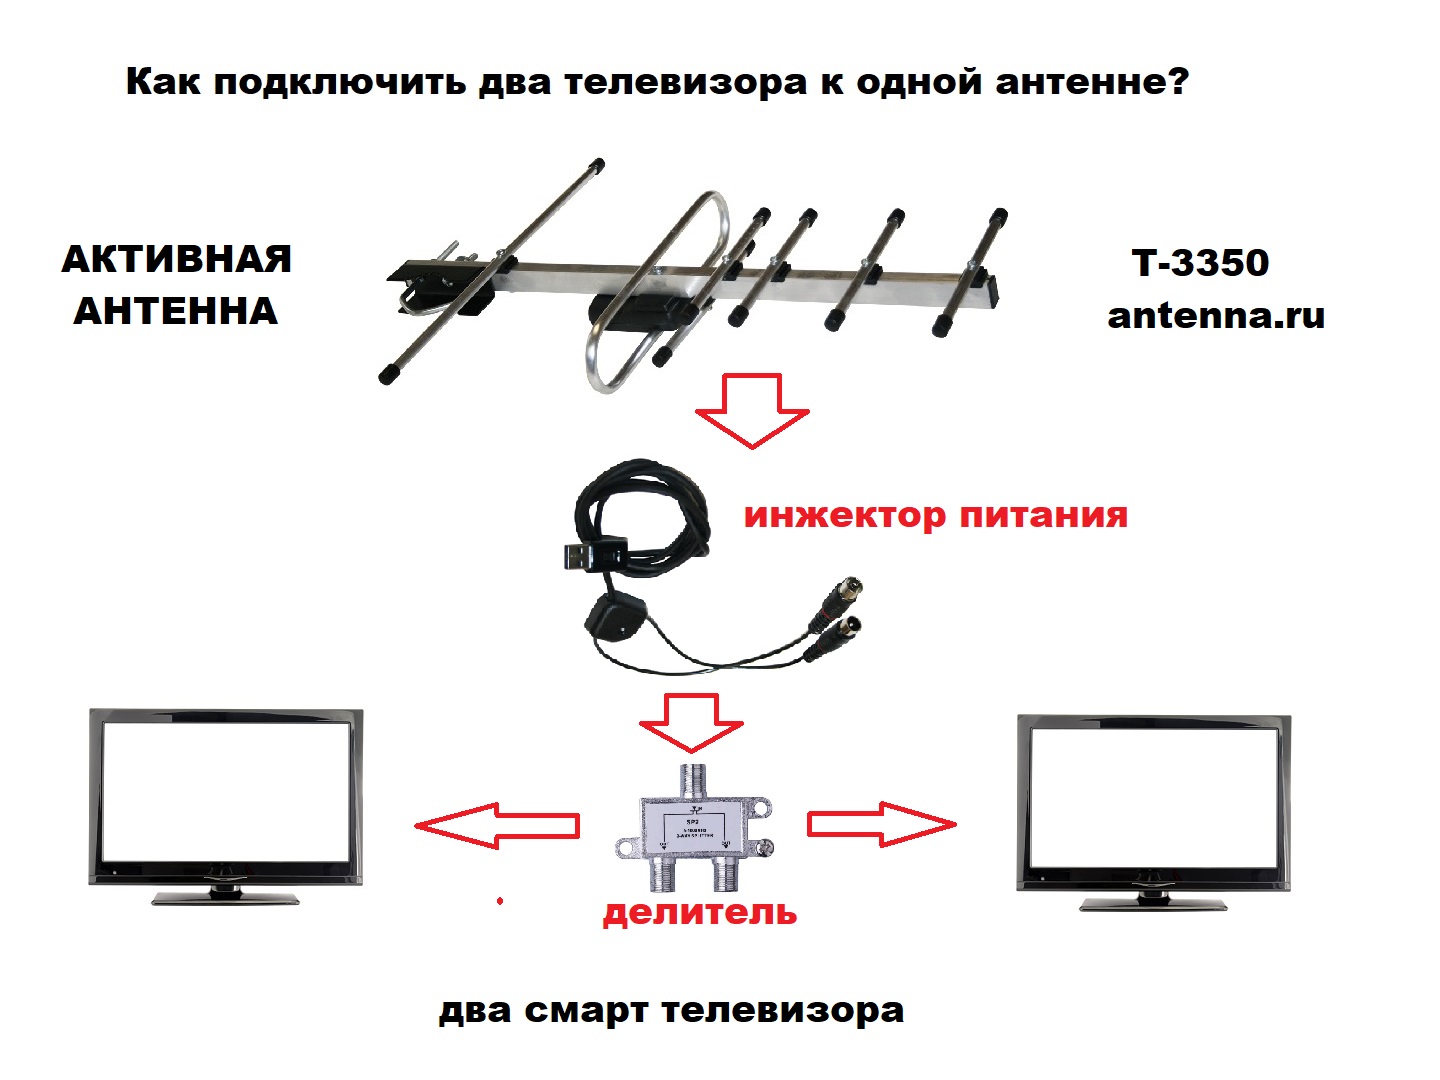 Как подключить два телевизора к одному роутеру мтс